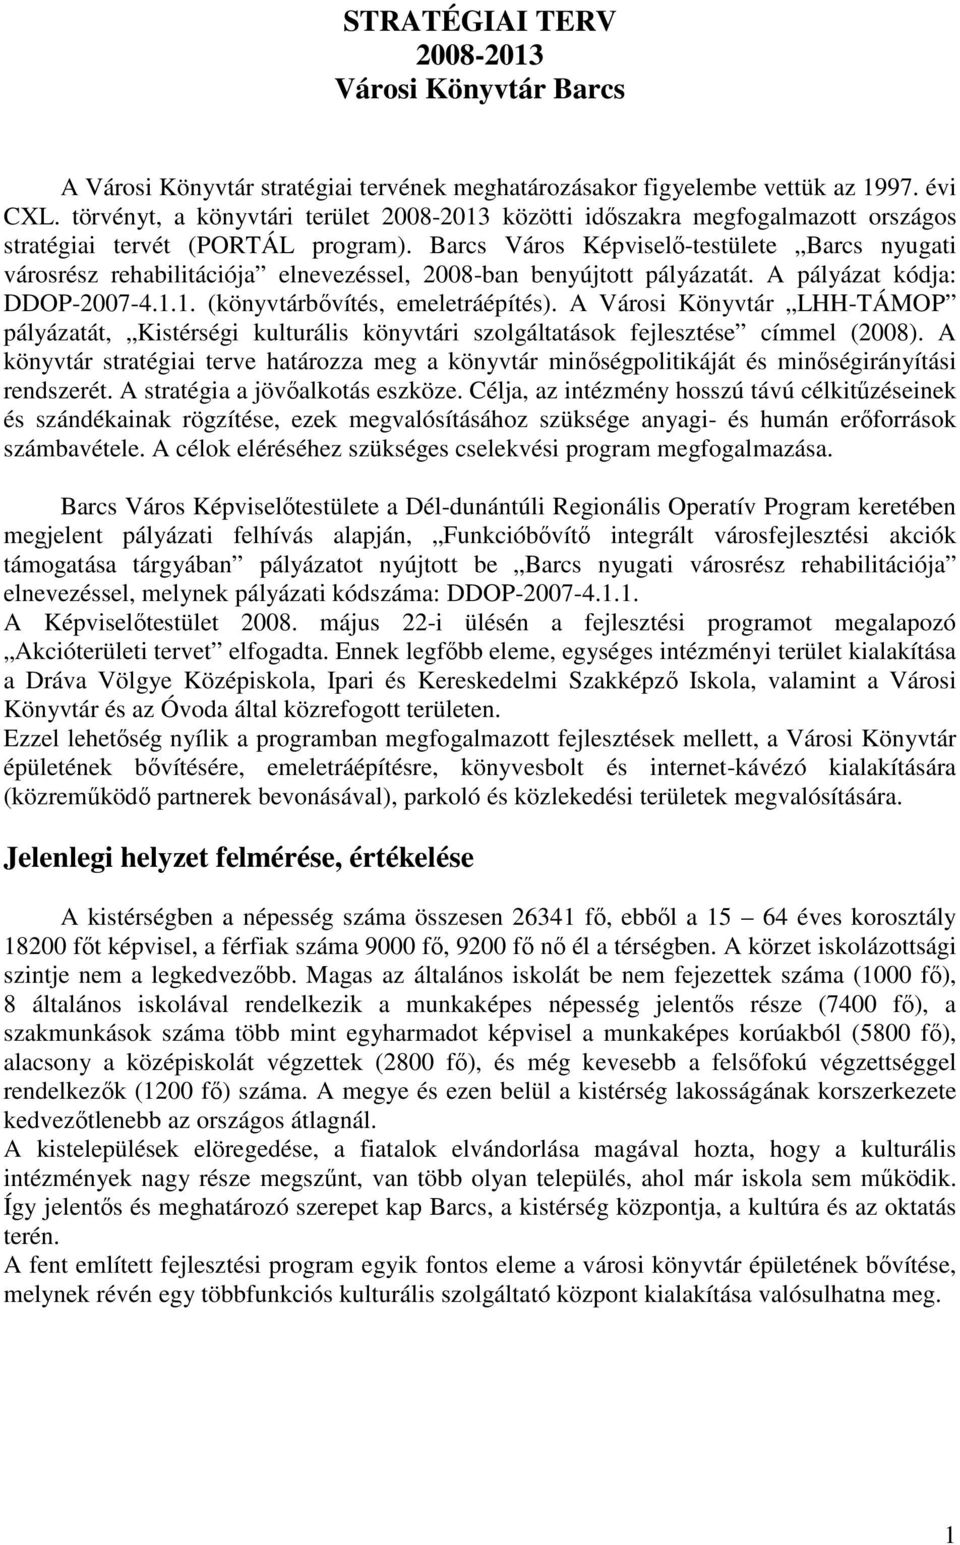 Barcs Város Képviselı-testülete Barcs nyugati városrész rehabilitációja elnevezéssel, 2008-ban benyújtott pályázatát. A pályázat kódja: DDOP-2007-4.1.1. (könyvtárbıvítés, emeletráépítés).